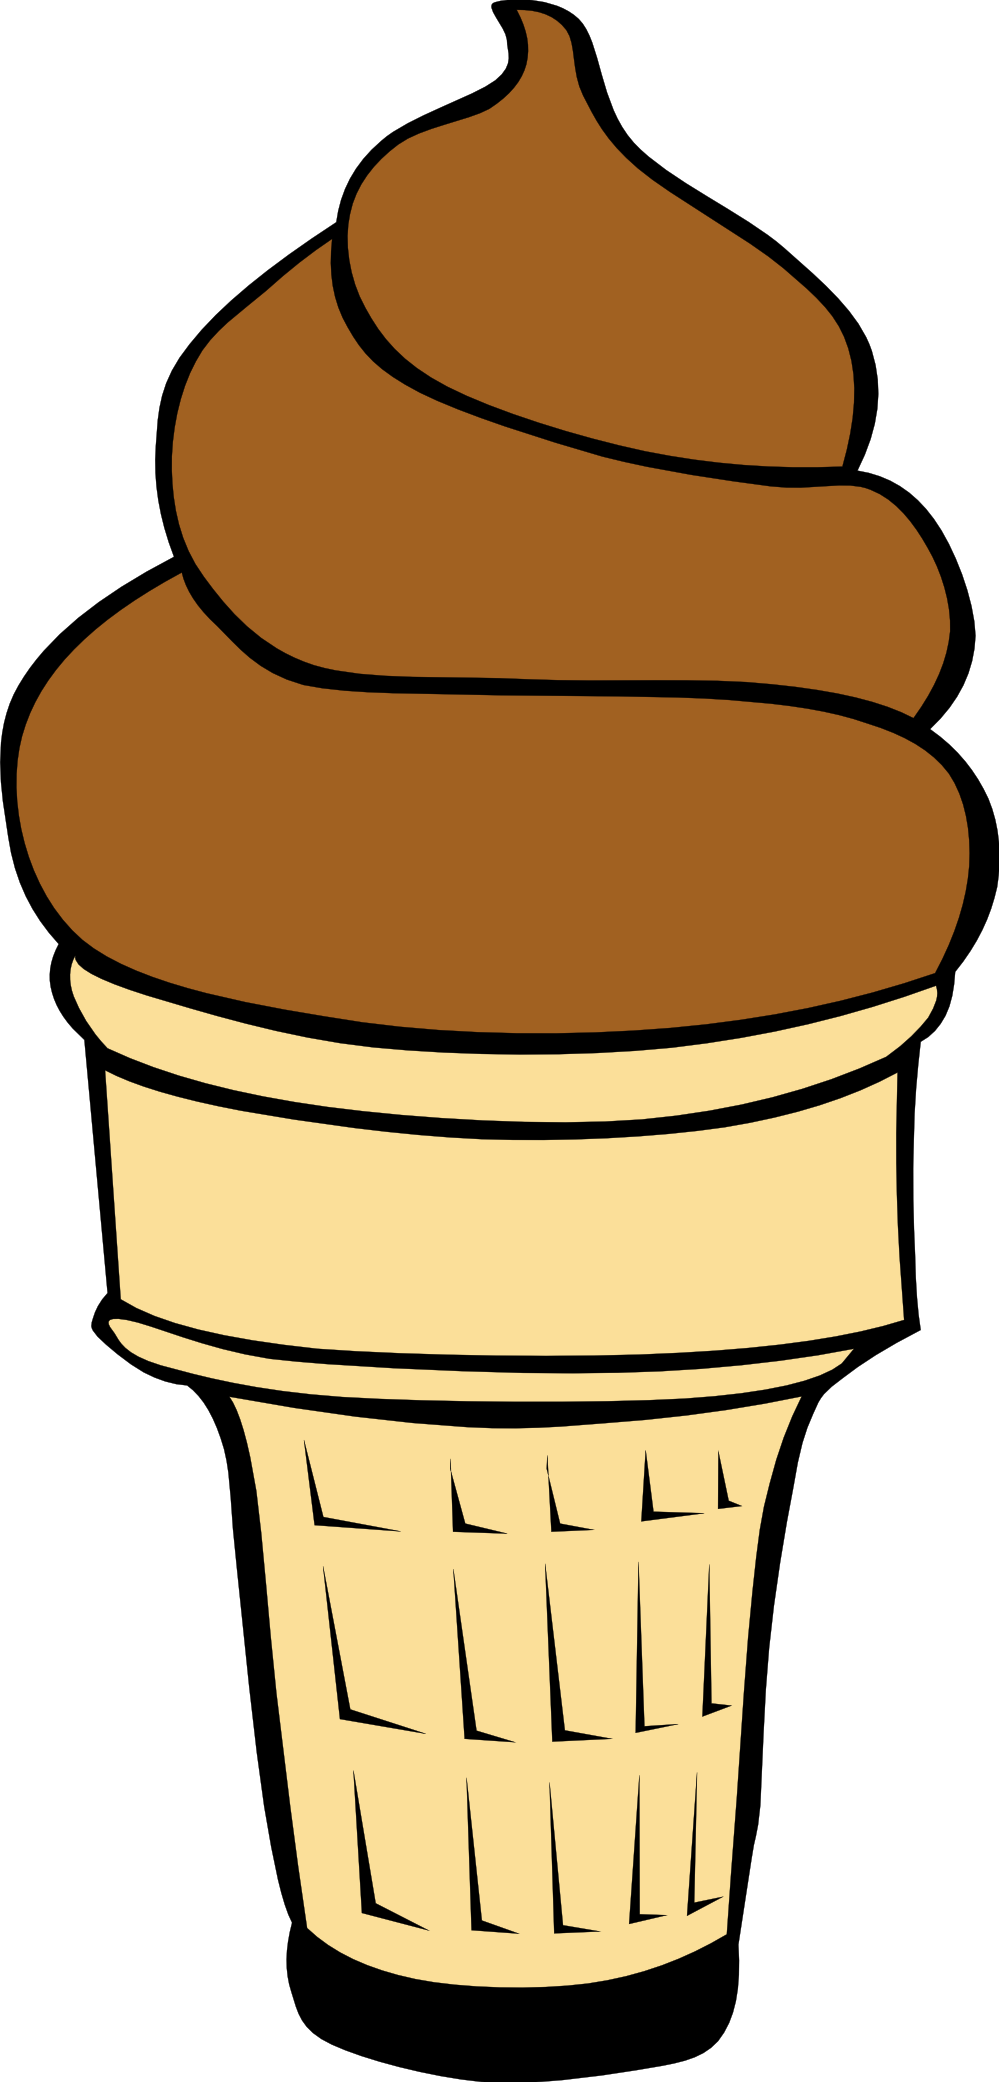 Cool ice cream cone clipart i